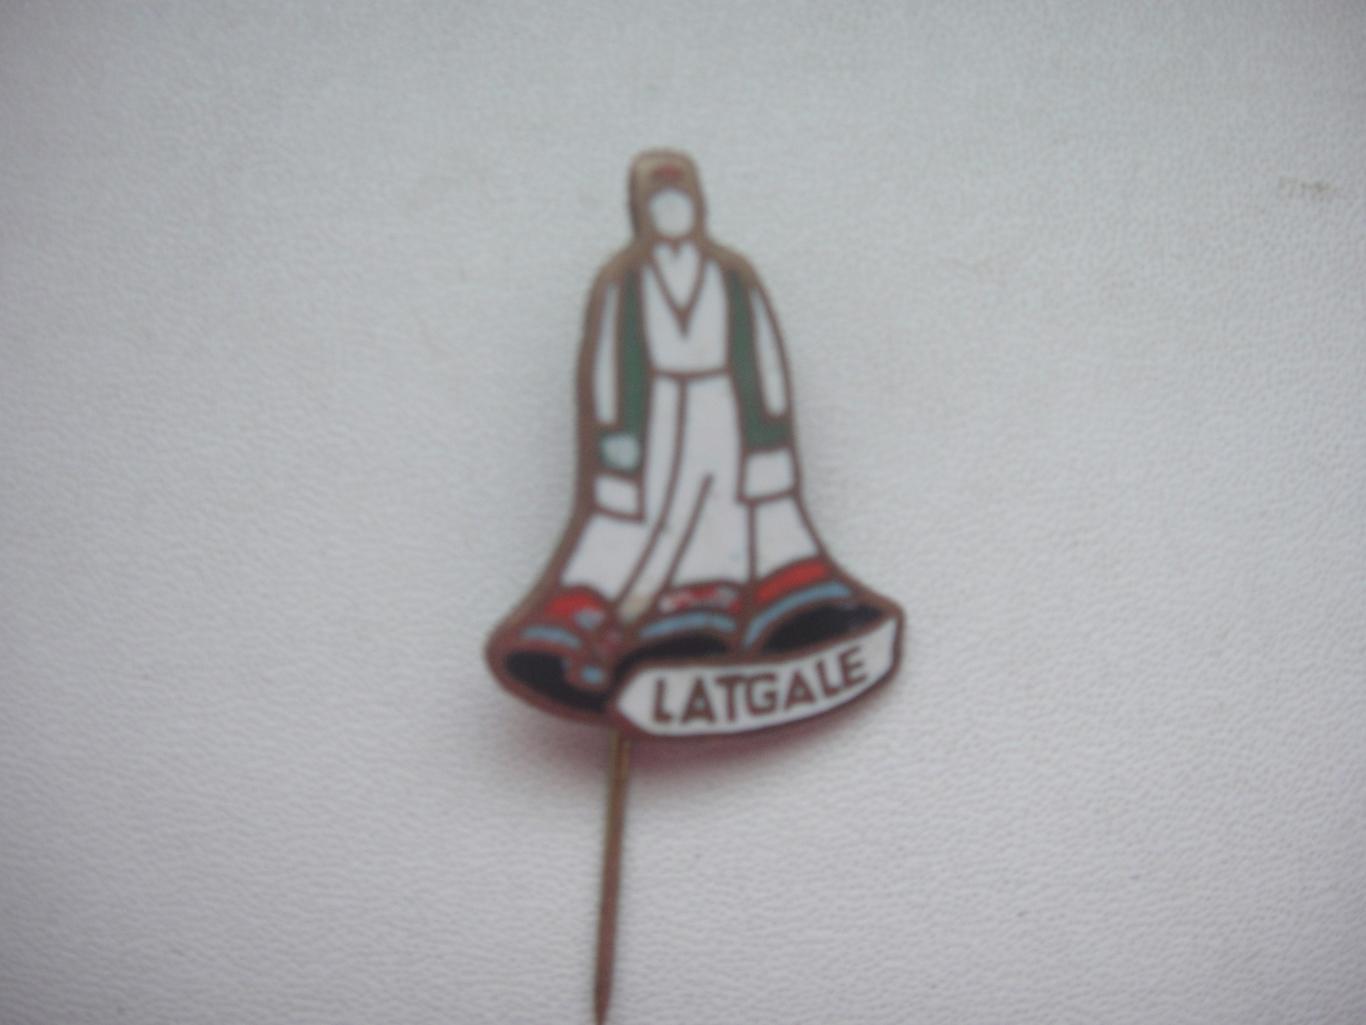 Знак LATGALE (Латвия) на иголке, тяжёлый, редкий